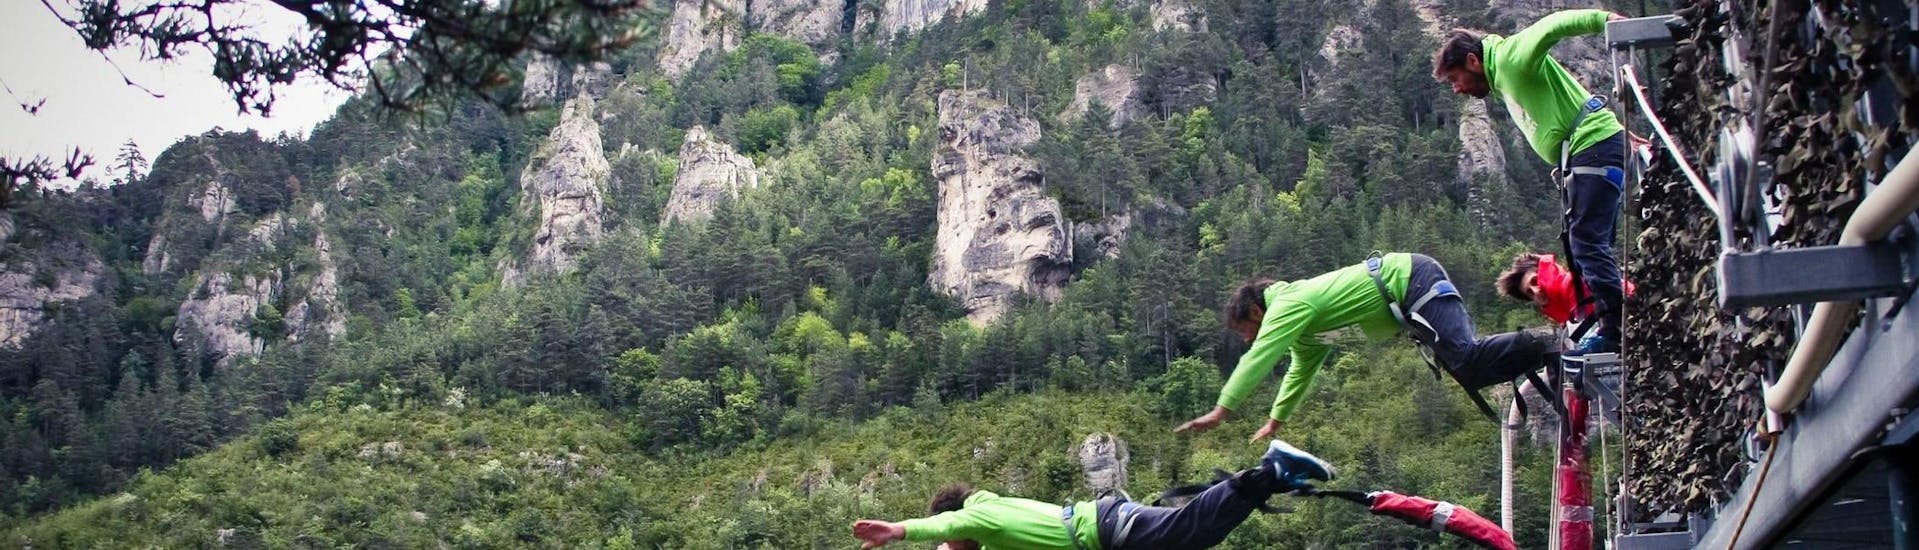 Un homme fait un saut durant son activité de Canoë et Saut à l'élastique "Le 107" - Gorges du Tarn (107m) avec Elastic Natural Bungee.